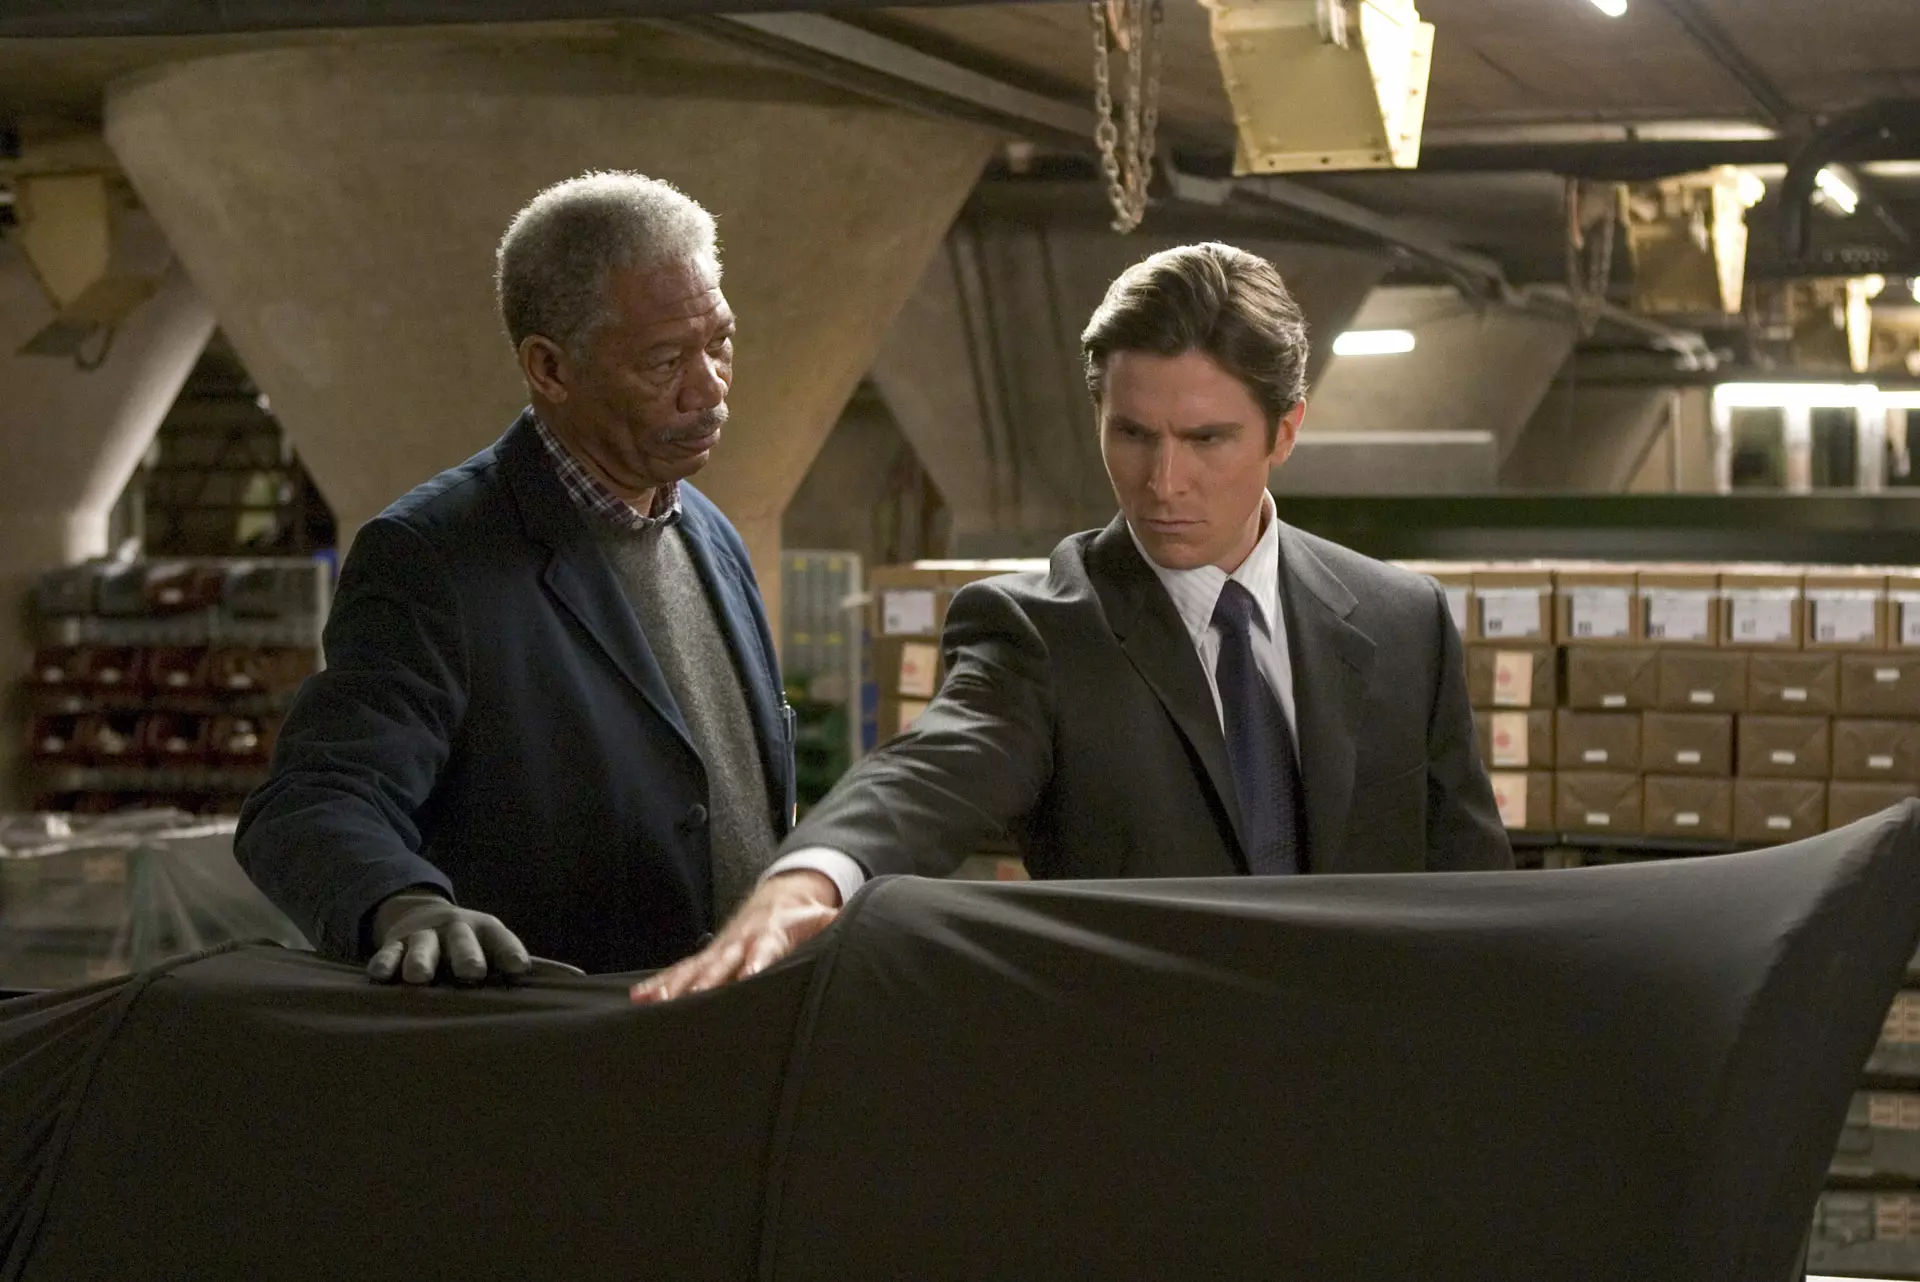 مورگان فریمن در نقش لوسیوس فاکس درکنار کریستین بیل در نقش بروس وین در فیلم بتمن